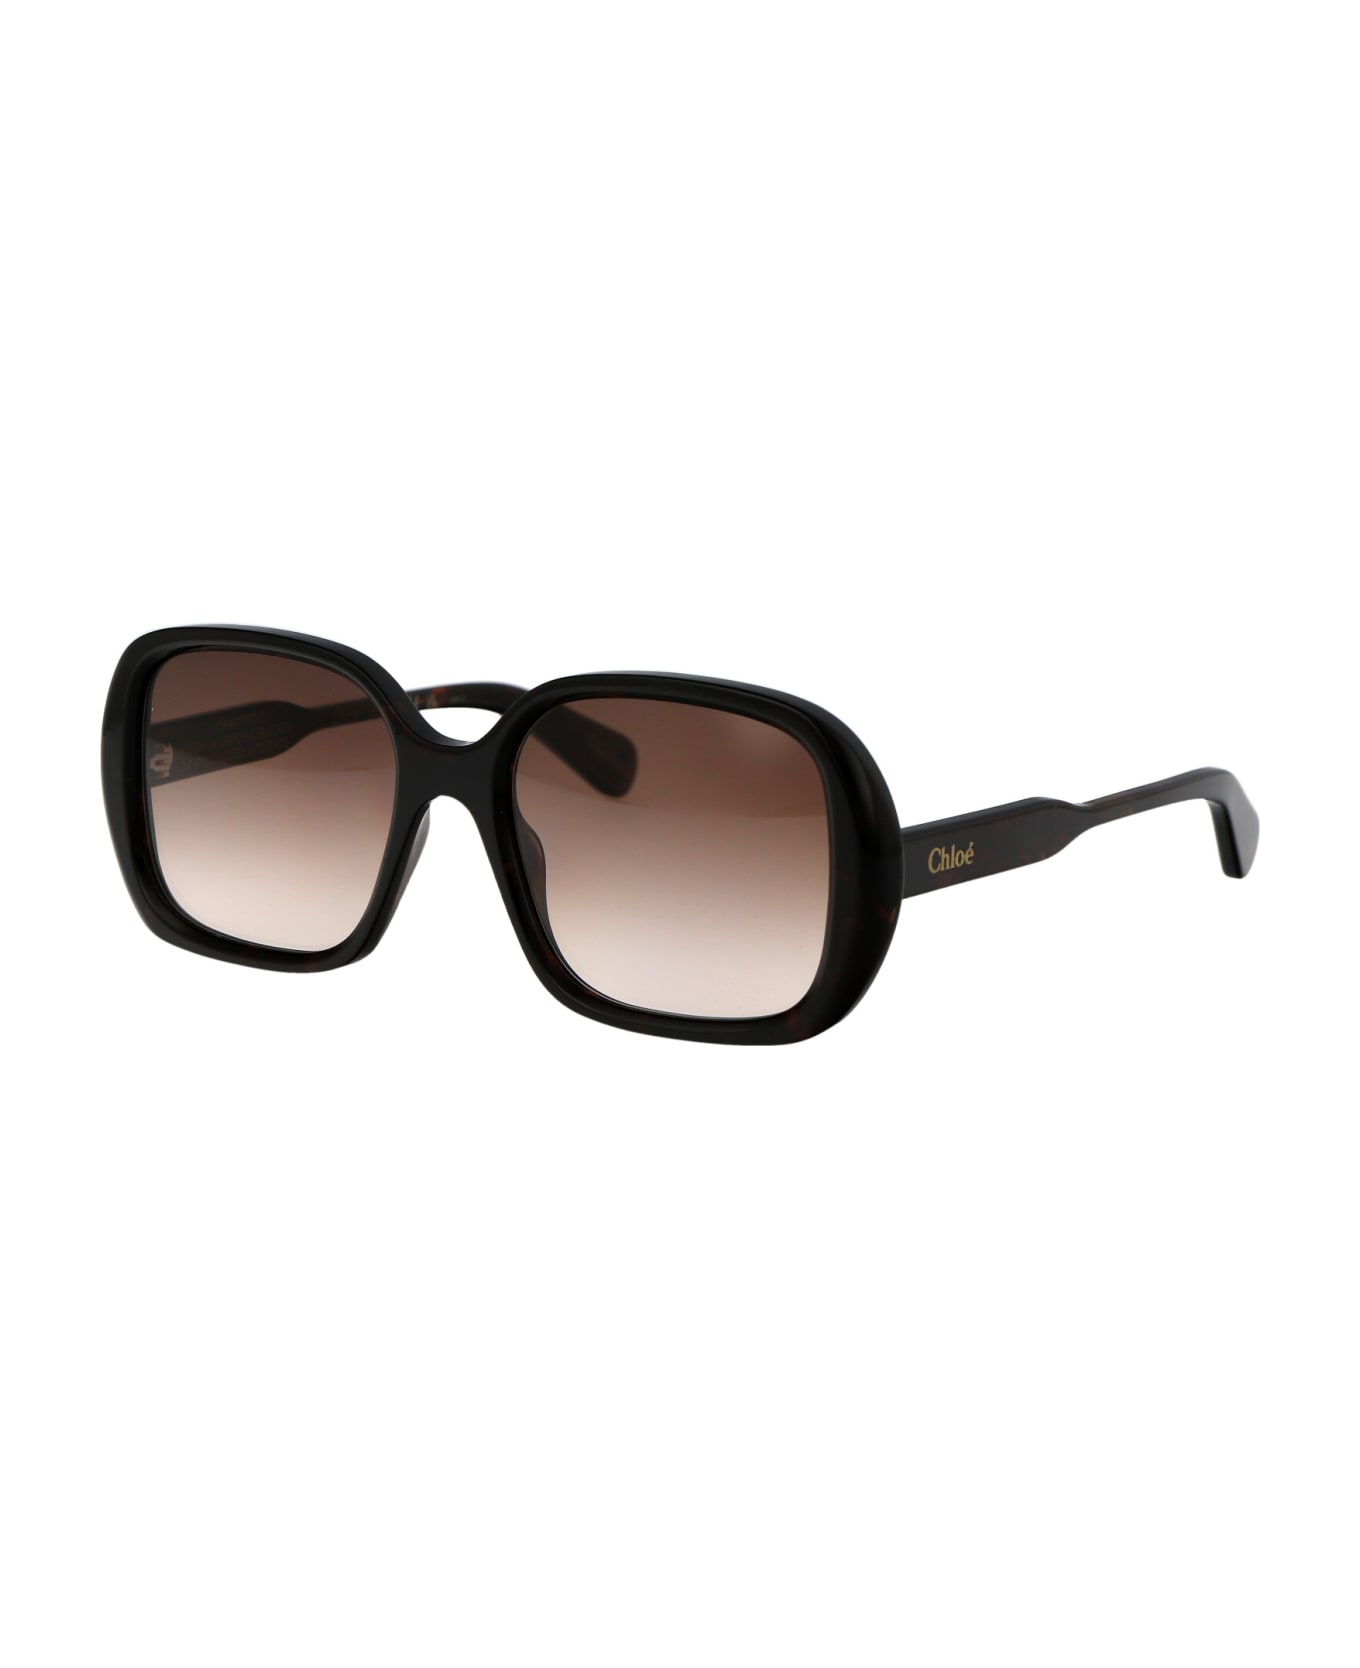 Chloé Eyewear Ch0222s Sunglasses - 002 HAVANA HAVANA BROWN